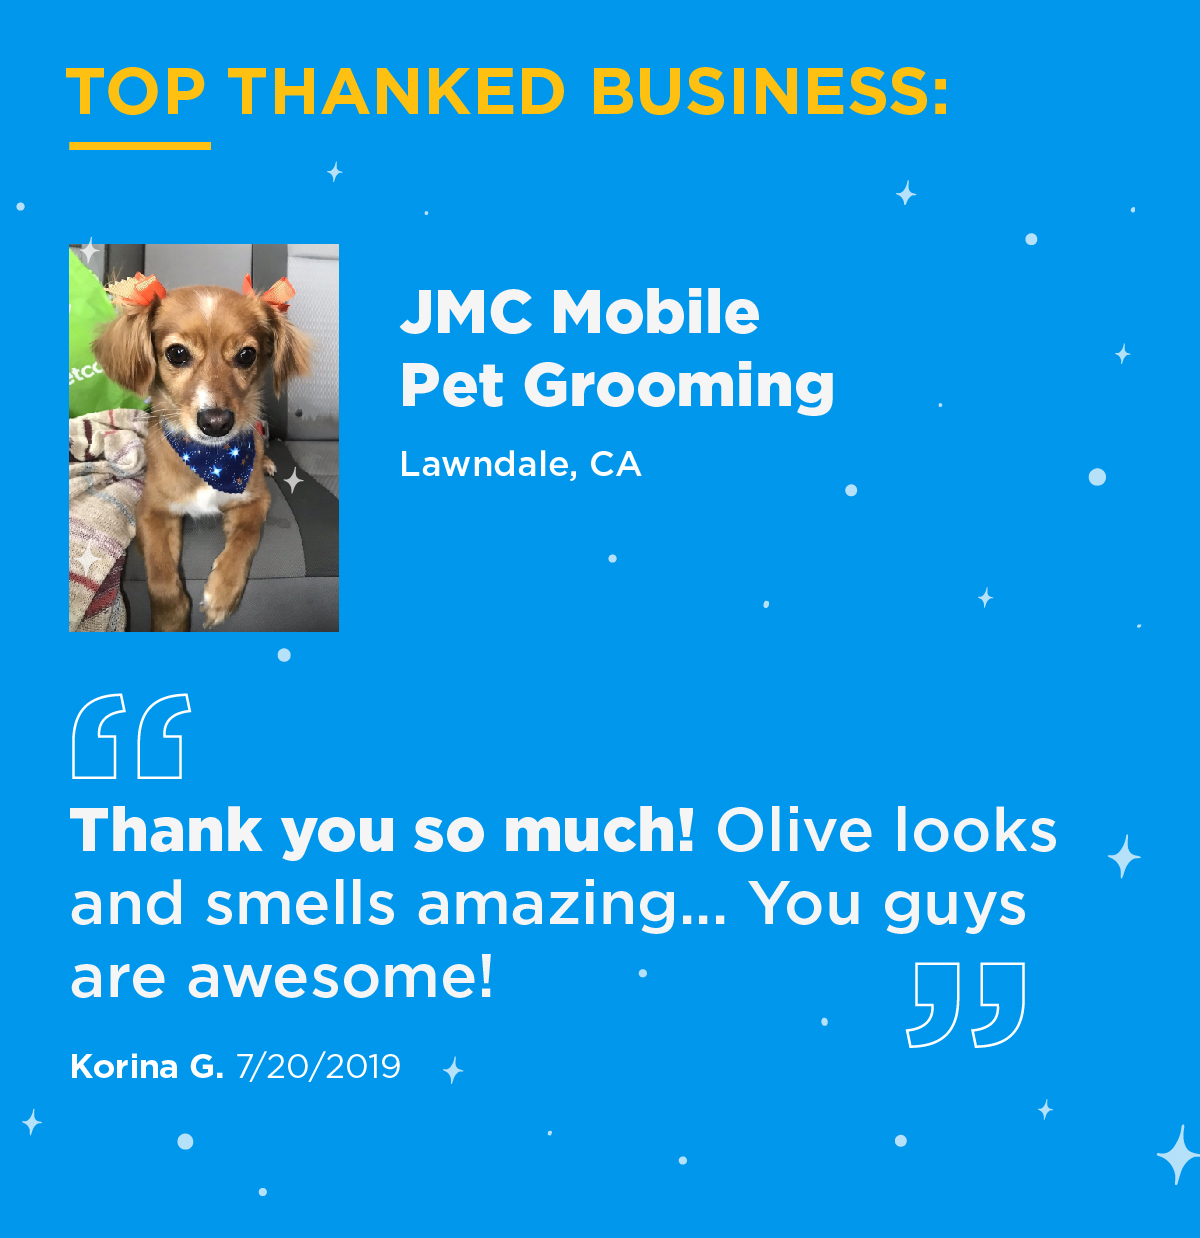 图片显示了Yelp上最受欢迎的企业。JMC Mobile Pet Grooming CA“非常感谢!橄榄树看起来和闻起来都很棒……你们太棒了!”-Korina G, 7/20/2019